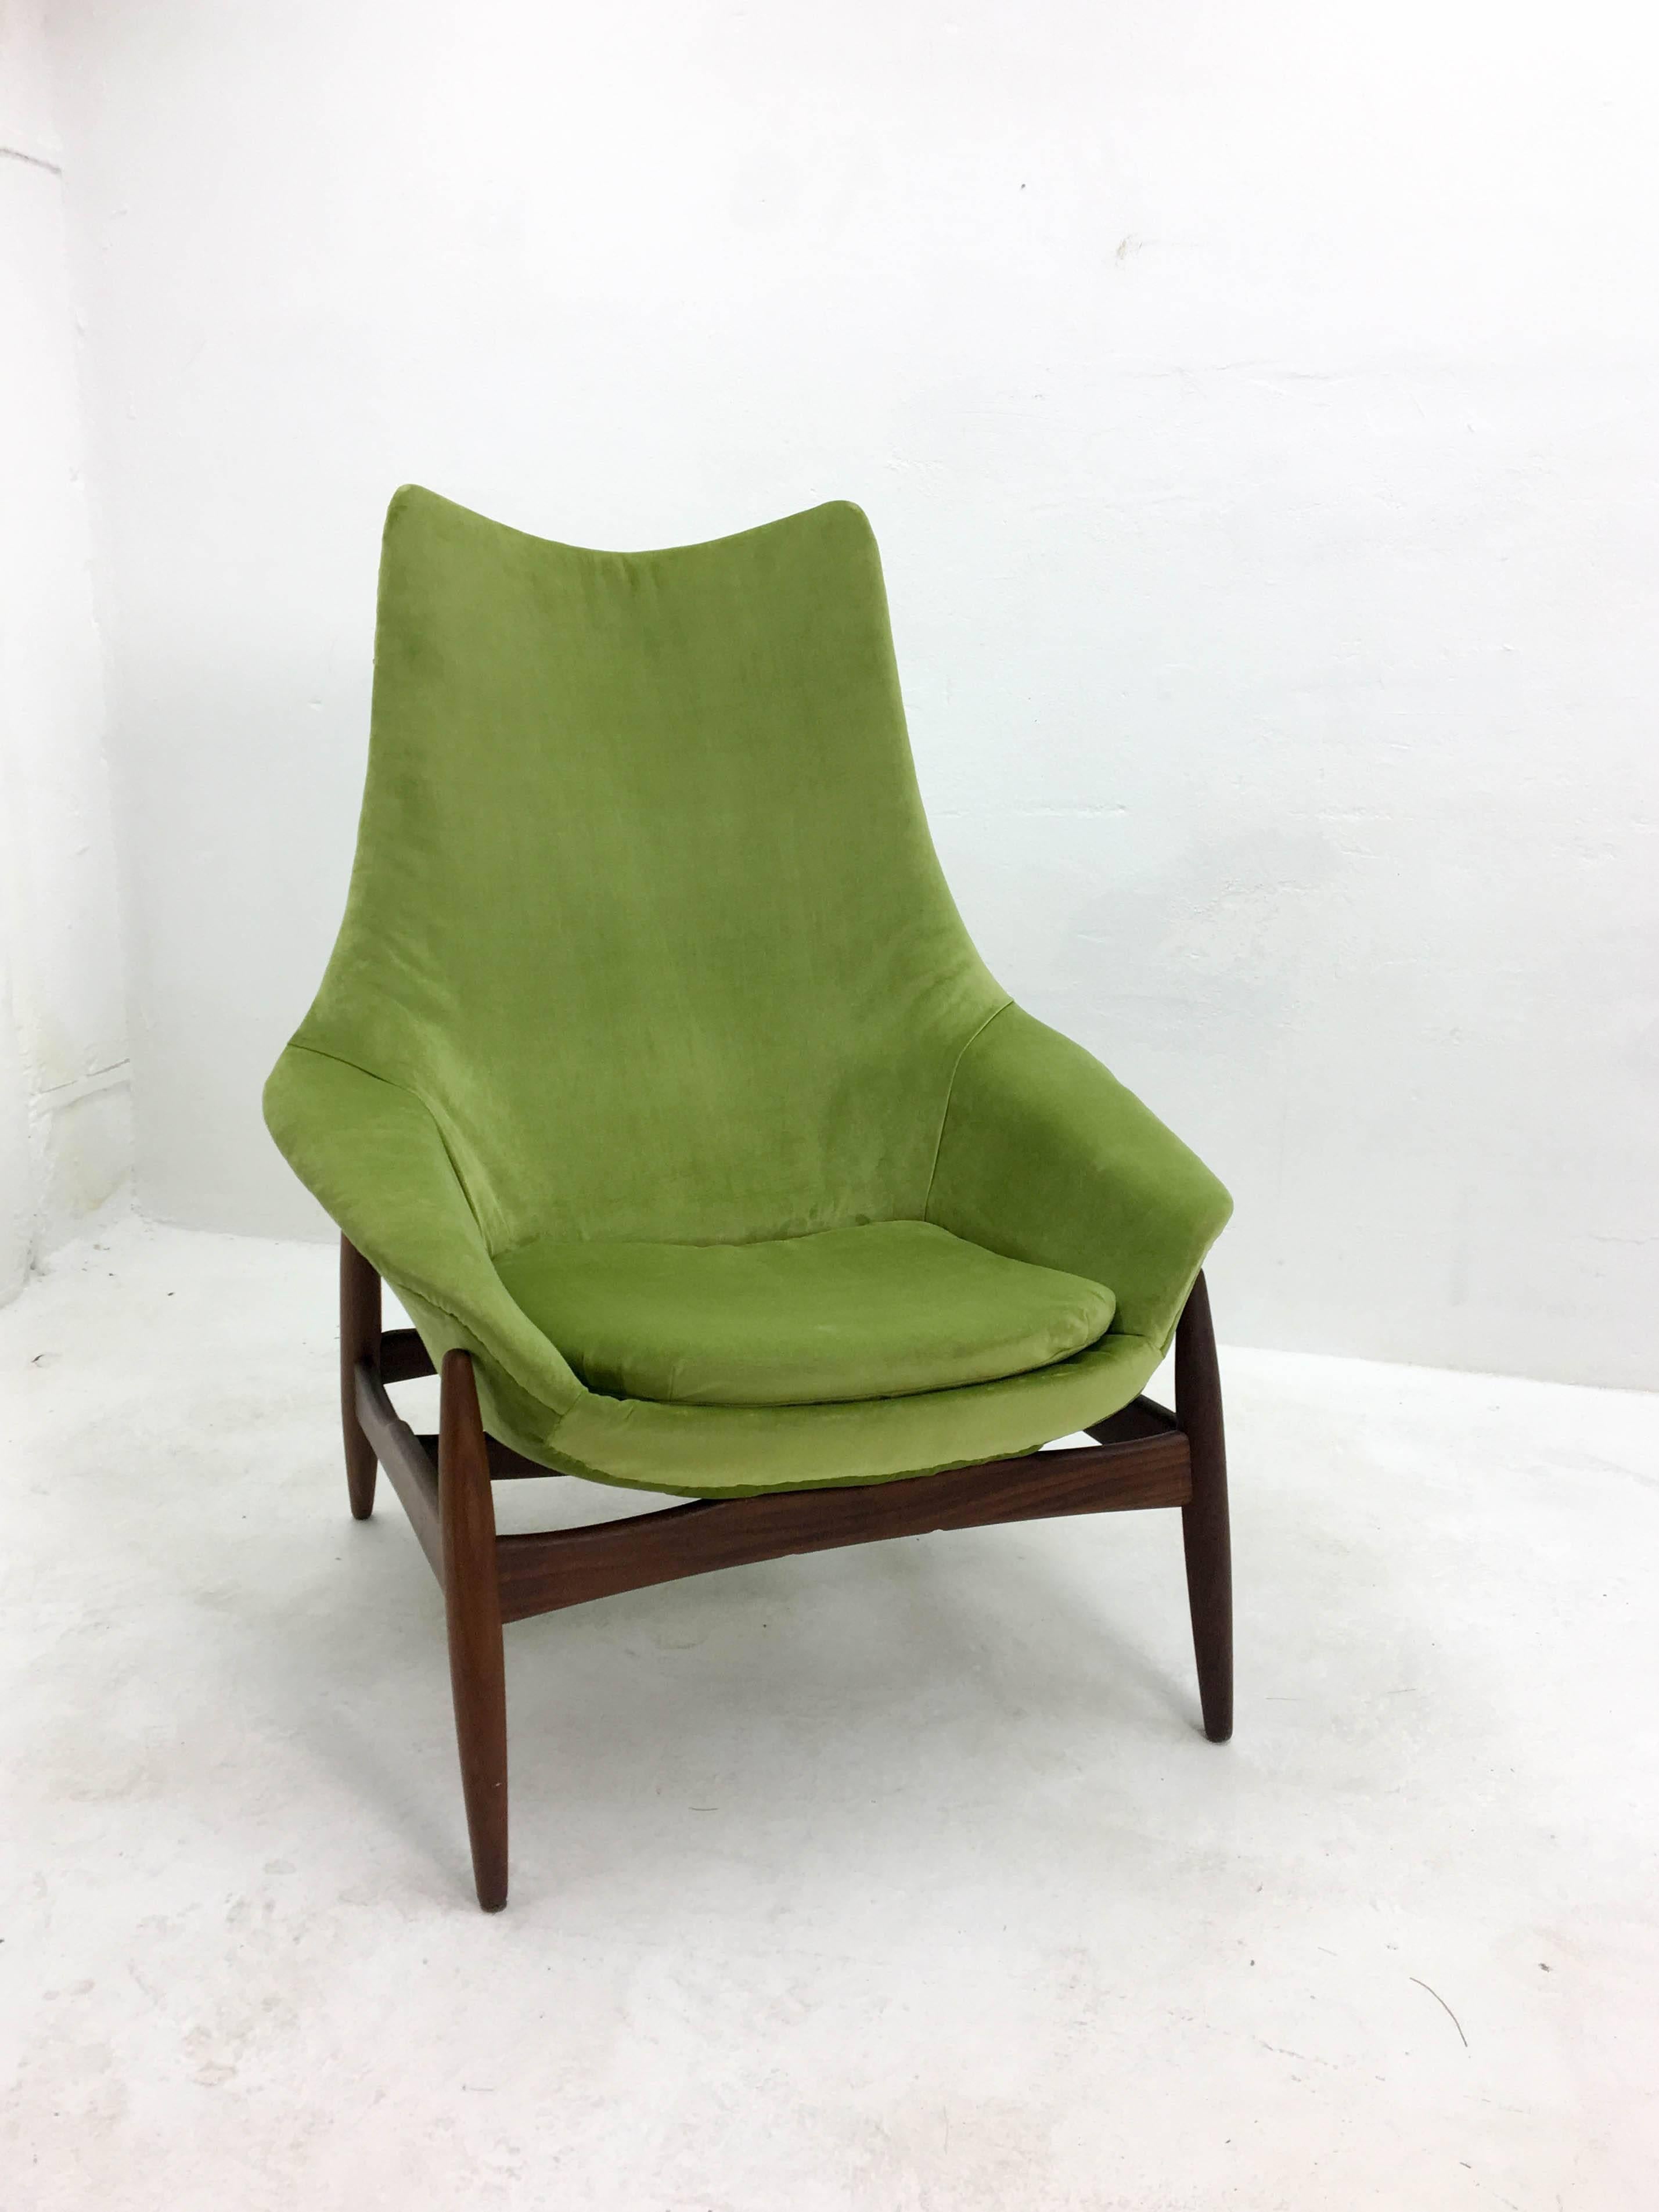 High back lounge chair designed by Henry Walter Klein for Bramin. New green velvet upholstery on a teak base, 1960s.